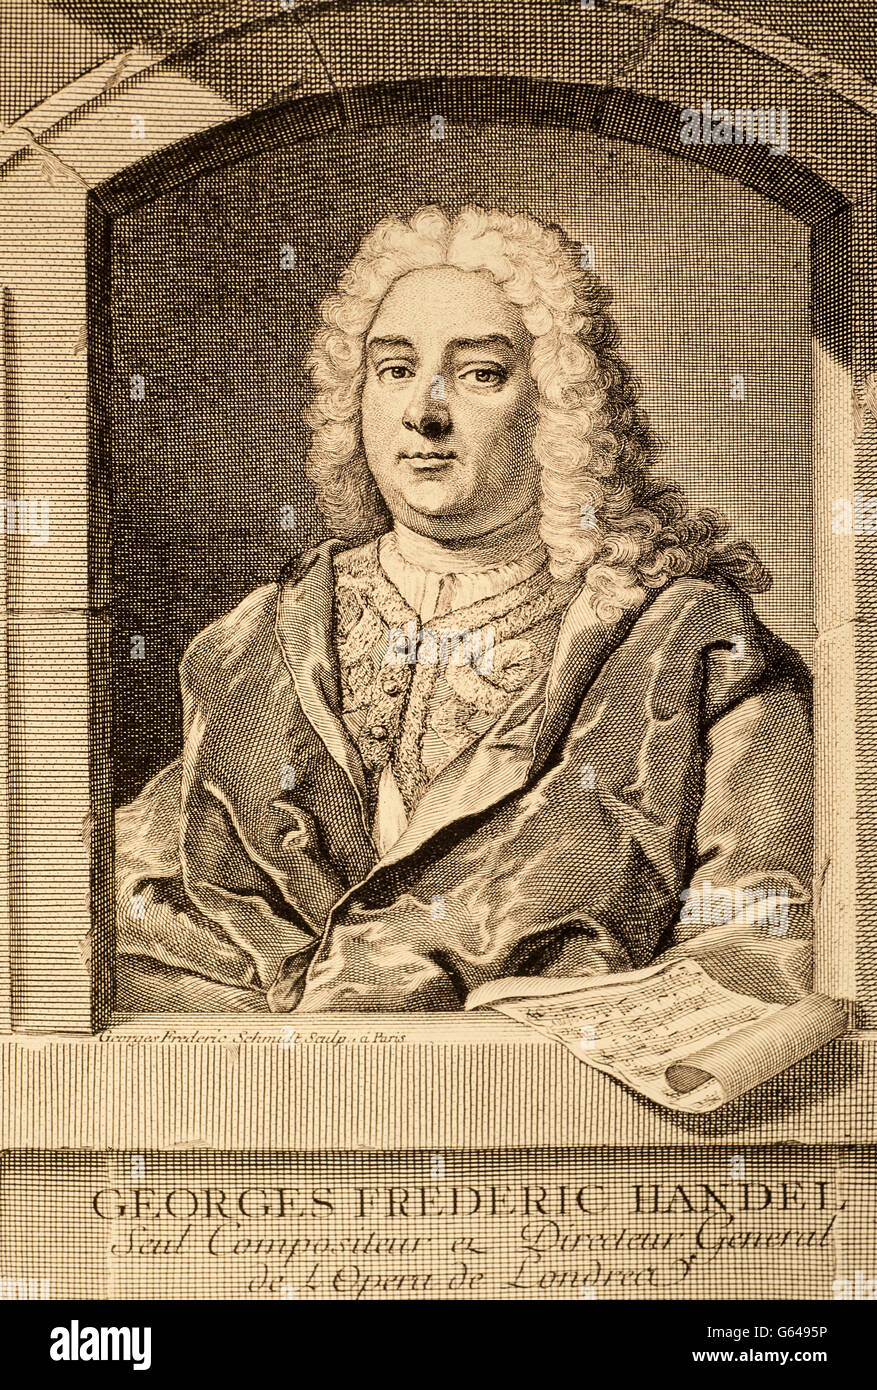 George Frideric Handel (Georg Friedrich Händel (Halle, 23 de febrero de 1685 - Londres, 14 de abril de 1759) compositor alemán naturalizado inglés en 1725 Foto de stock